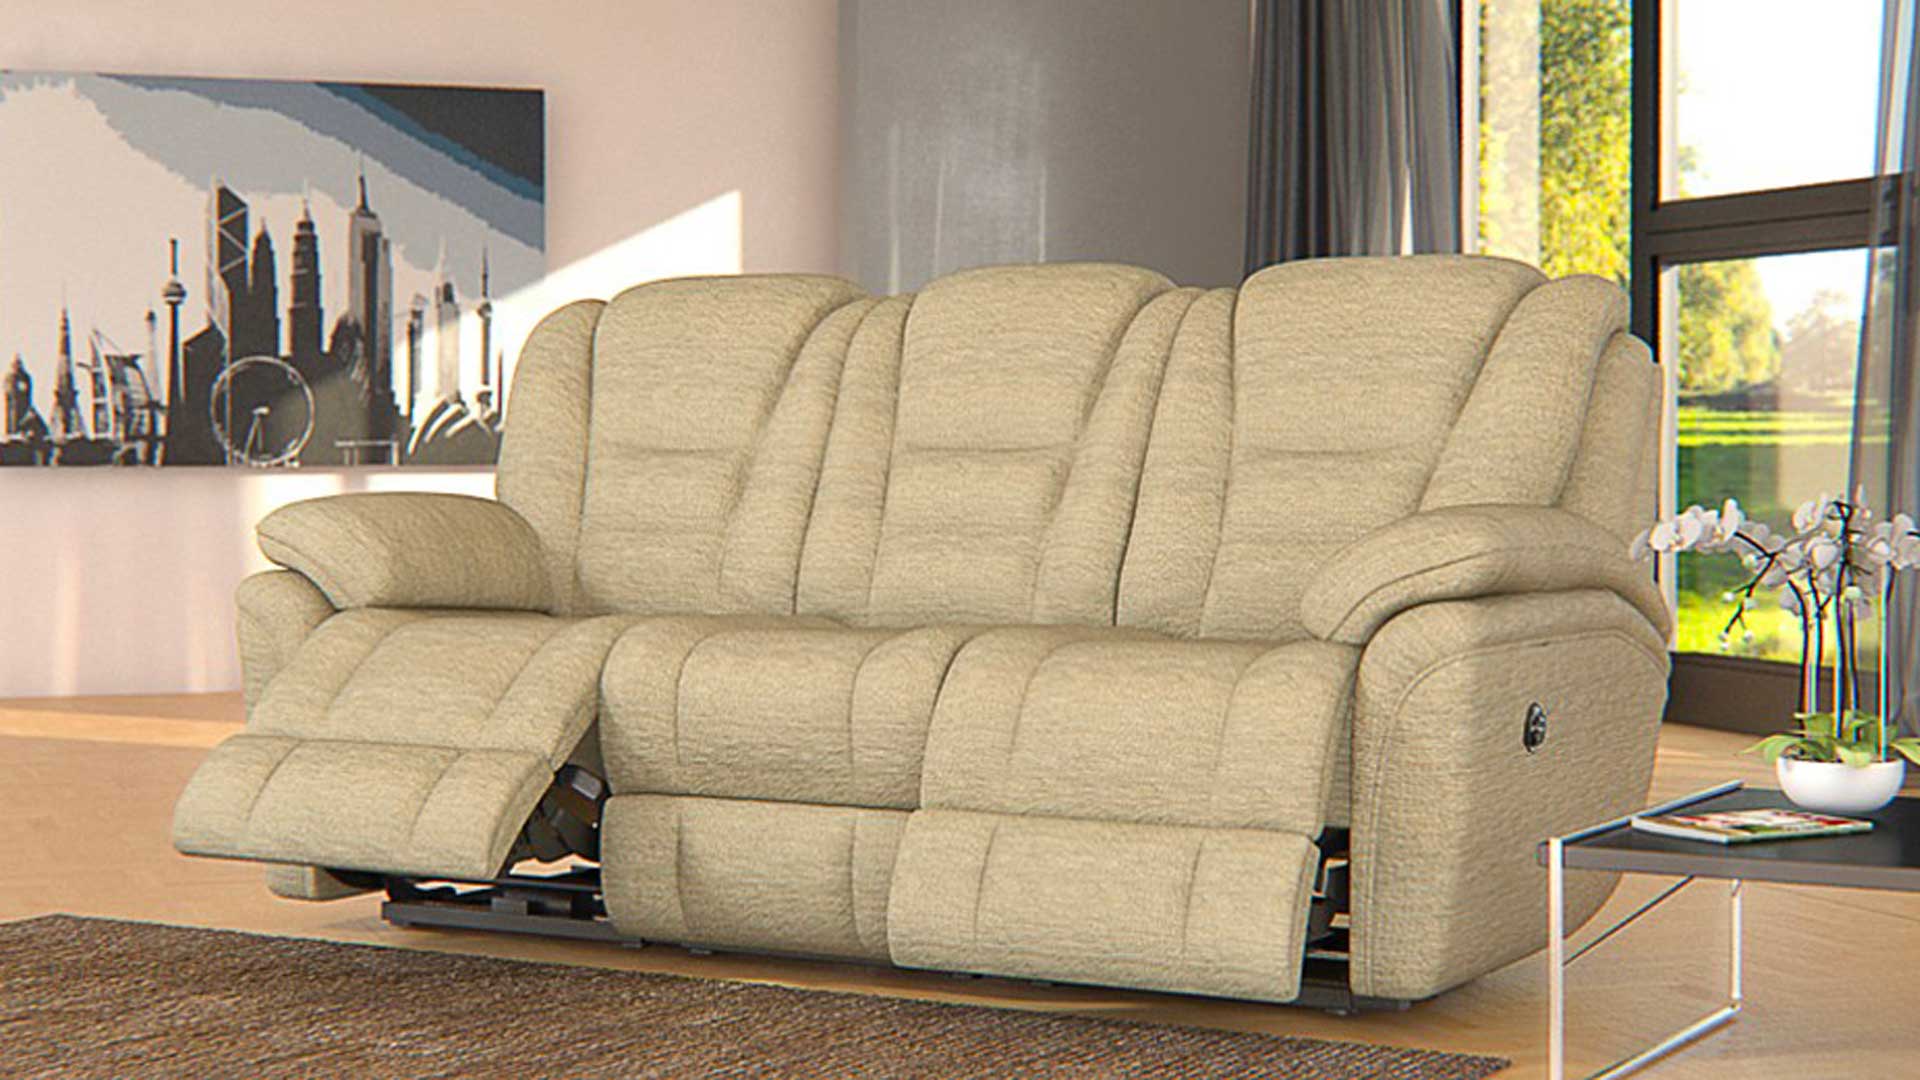 Superior sofa